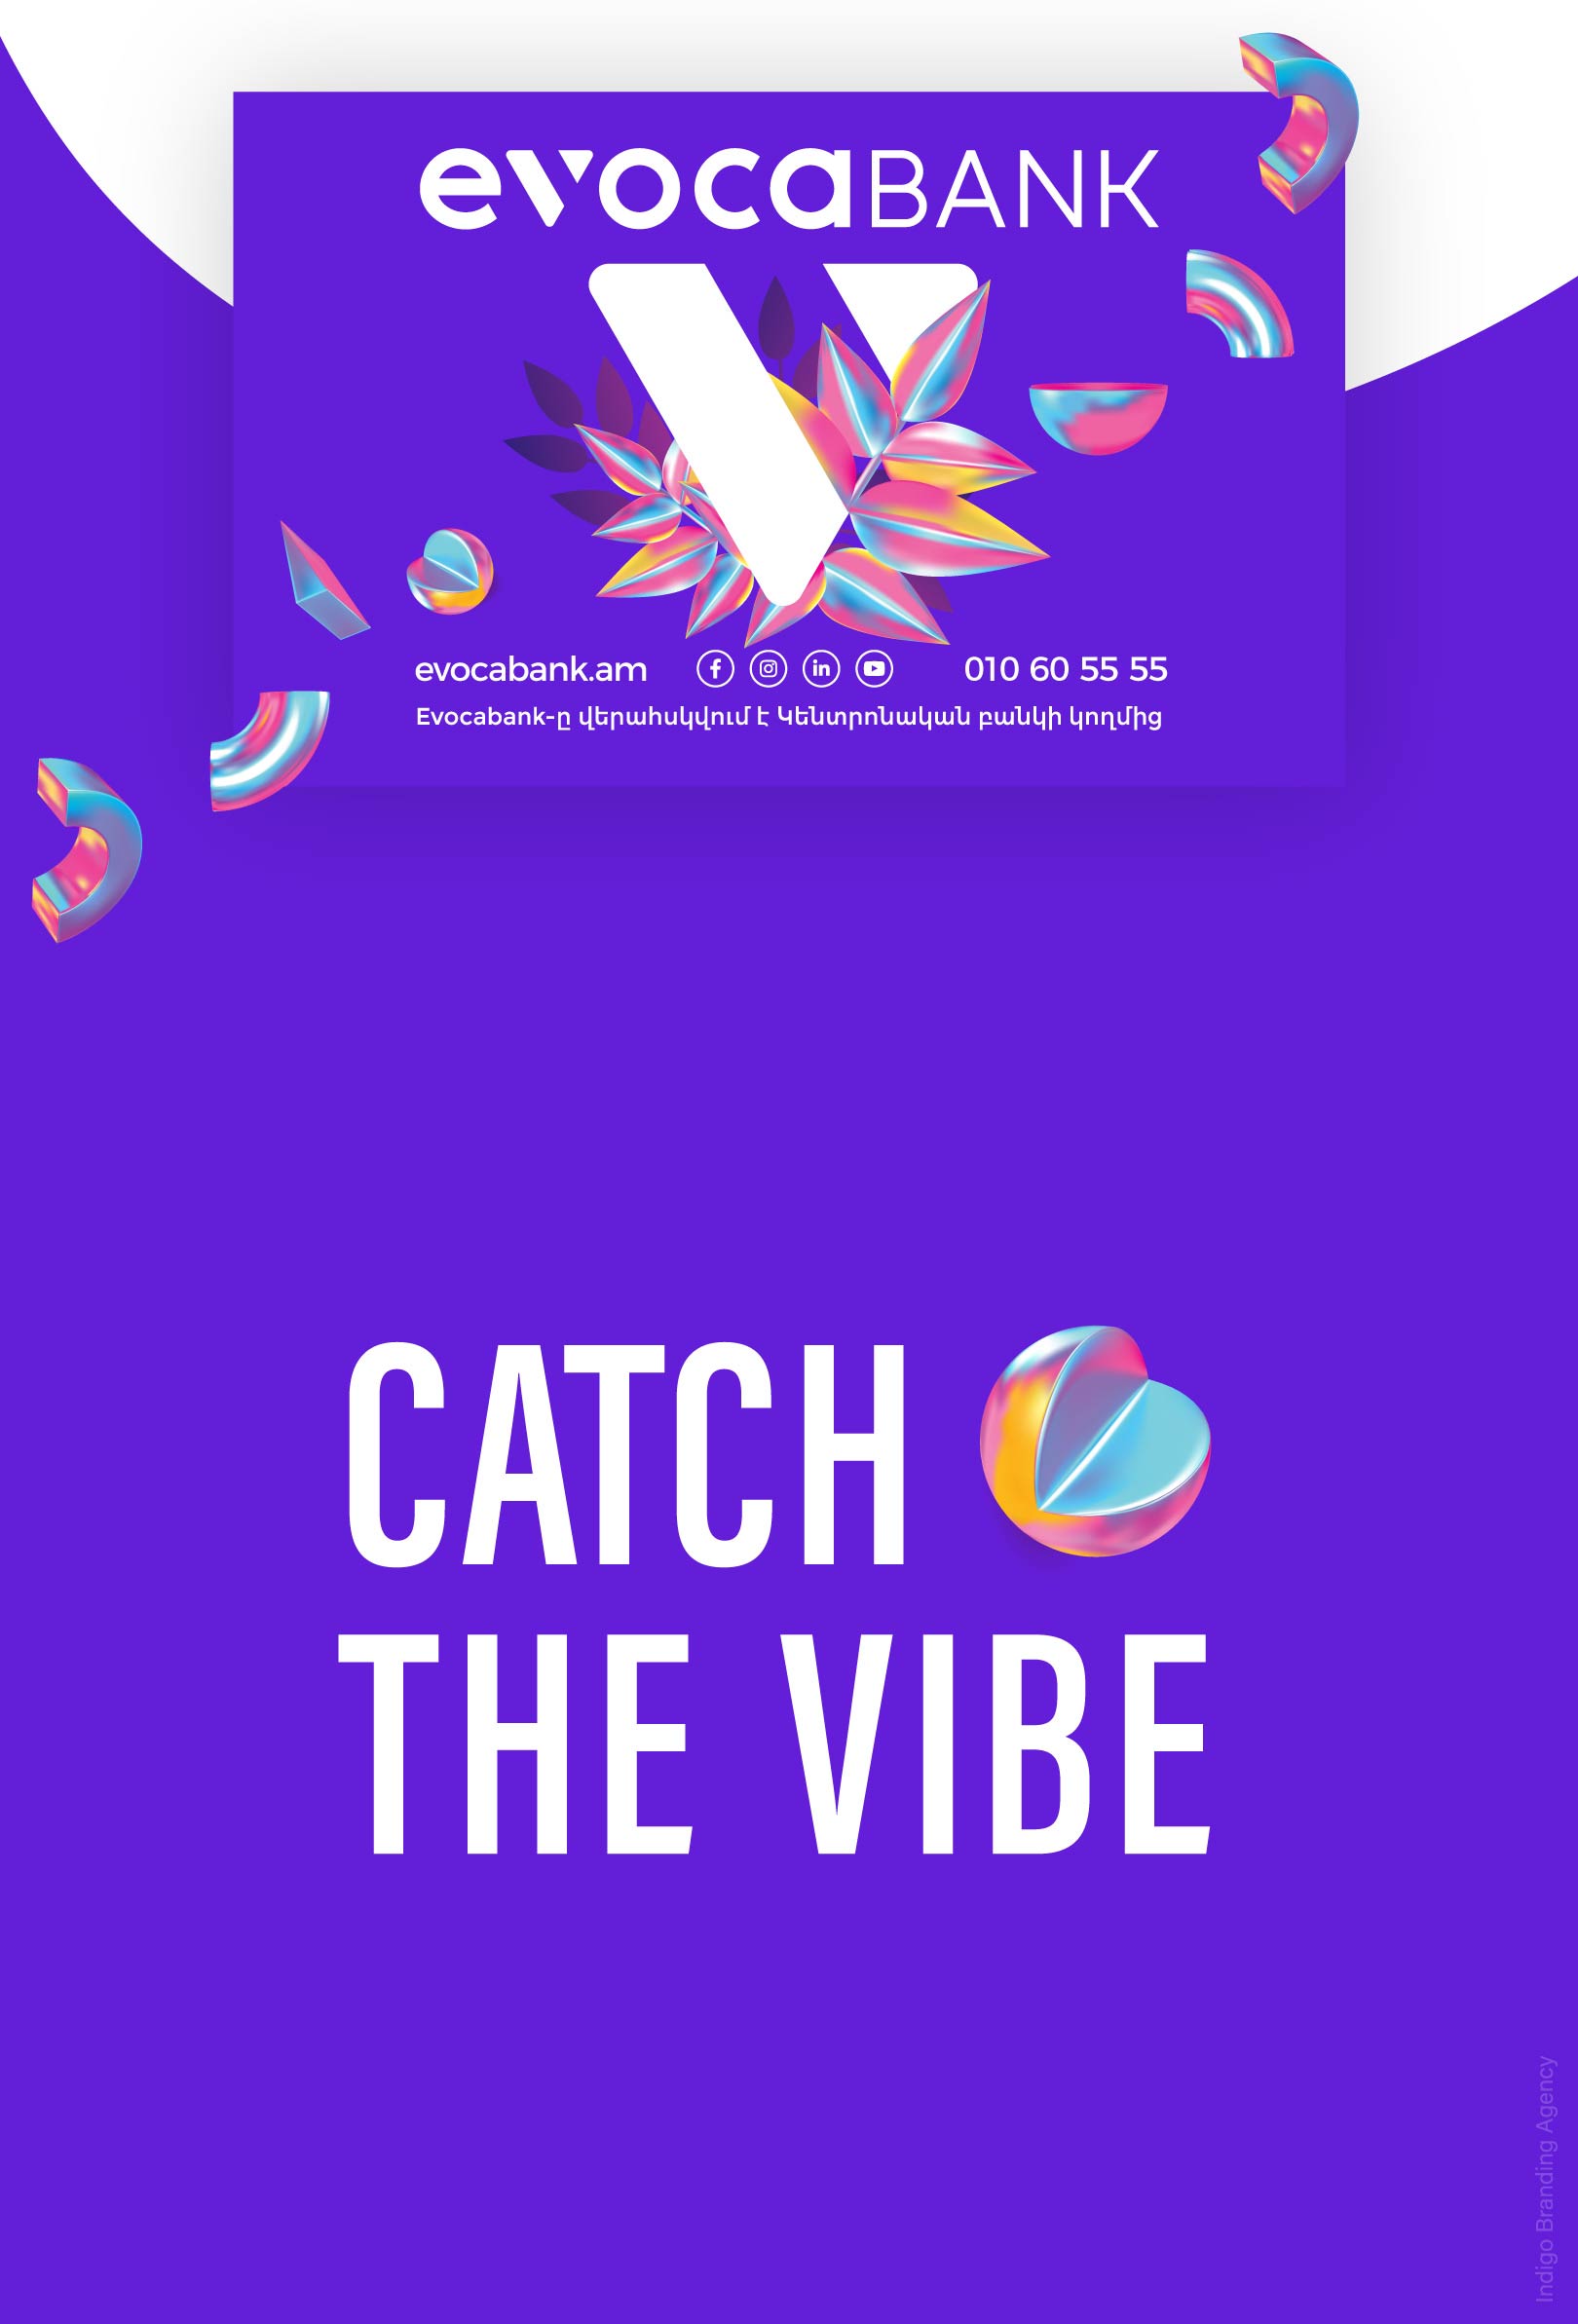 Evocabank ad campaign visual identity design by Indigo branding